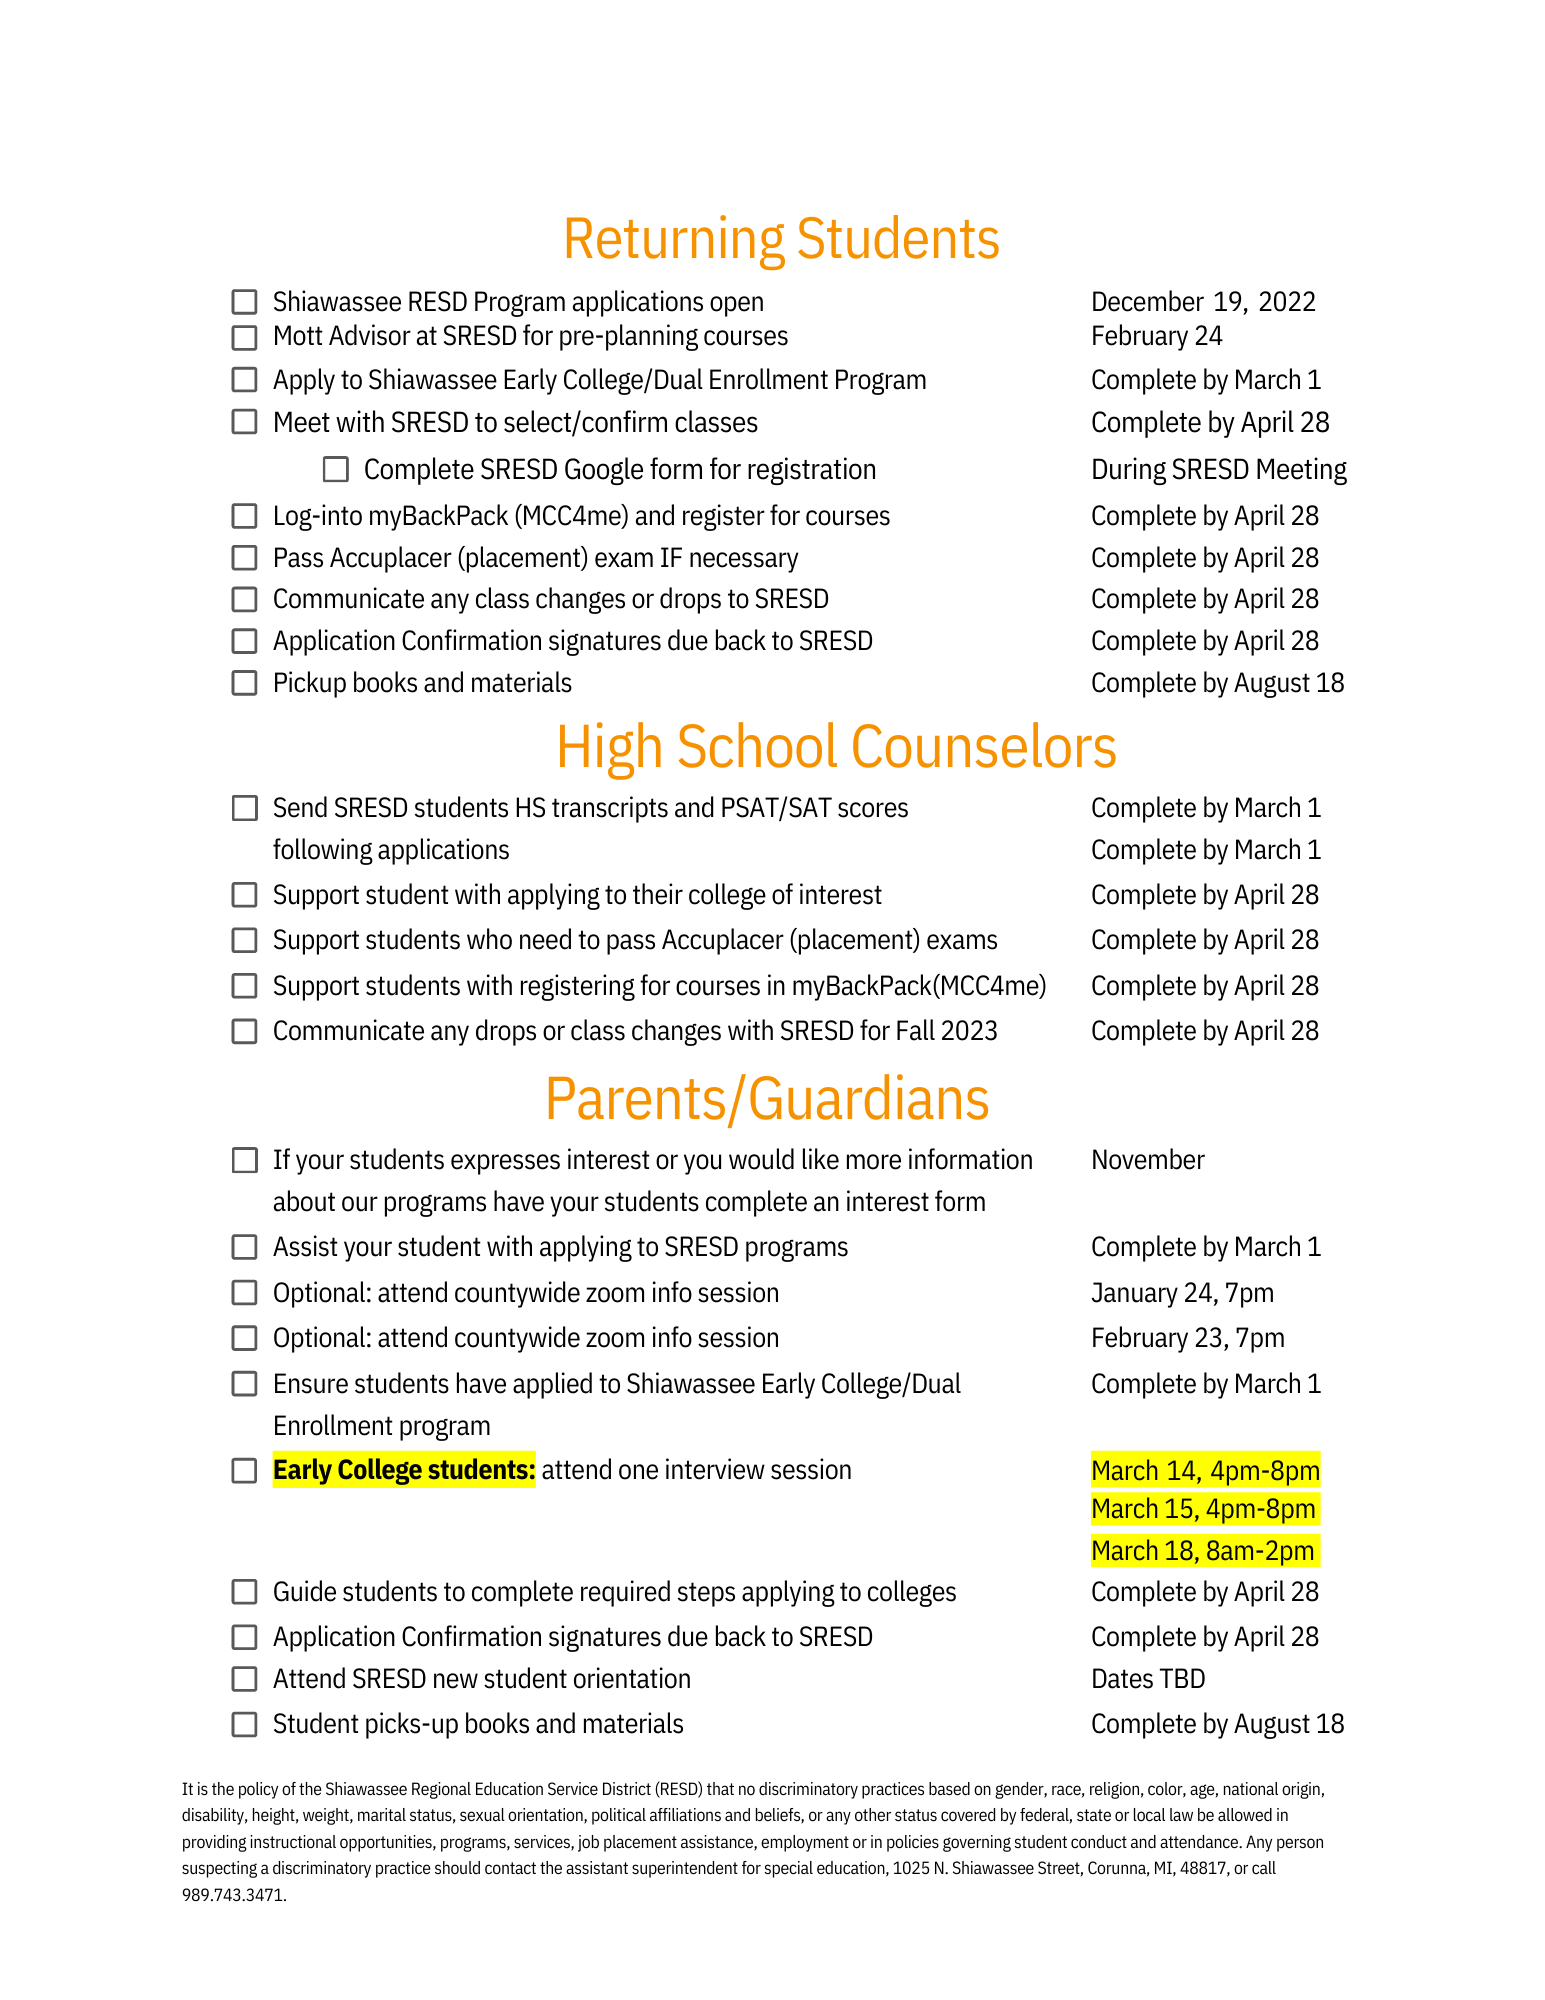 Mott 23-24 enrollment checklist